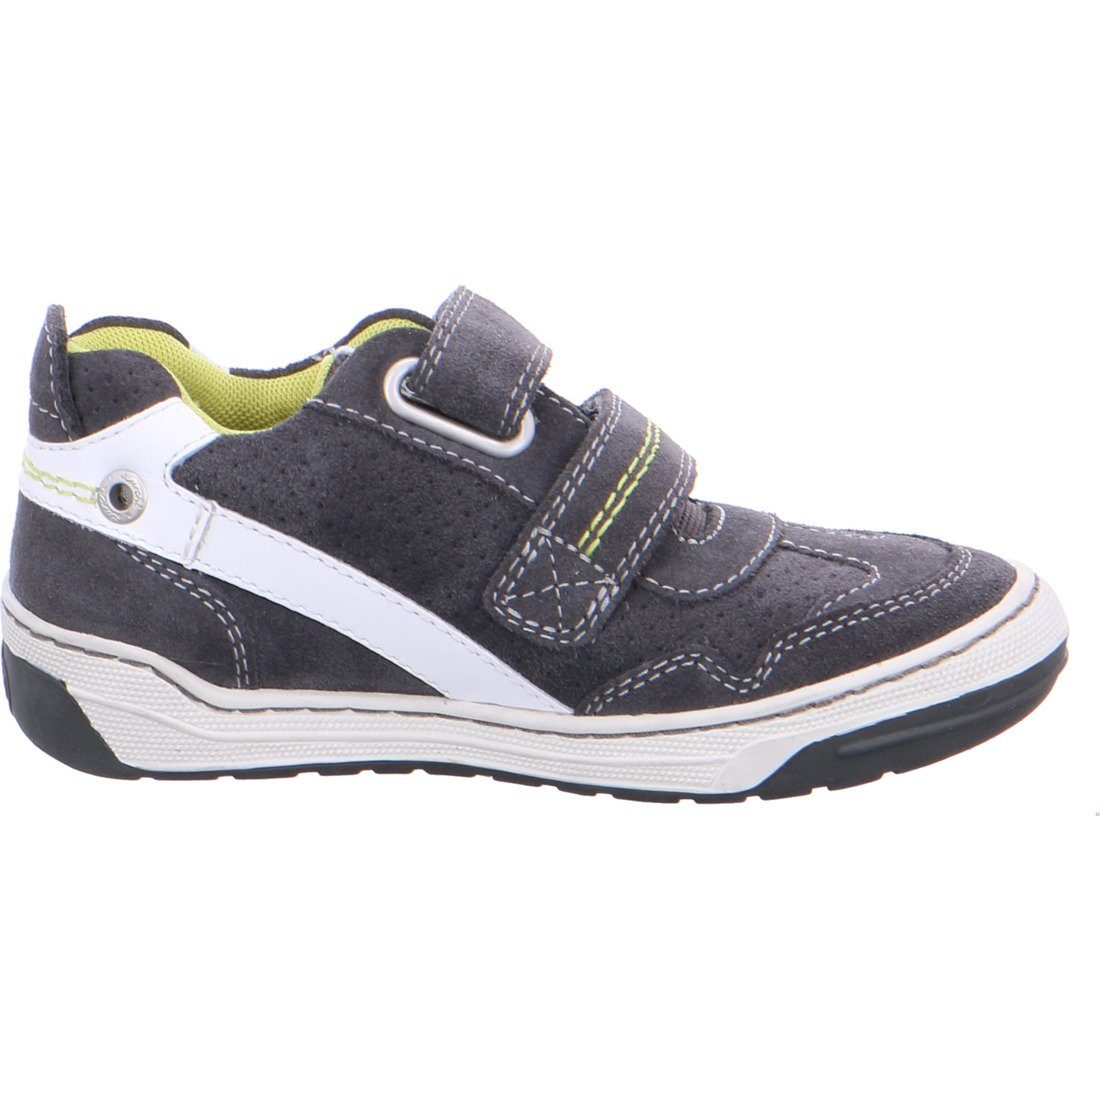 Bruce Rauleder 036954 Sneaker Jungen Sneaker grau Schuhe, Lurchi - Lurchi